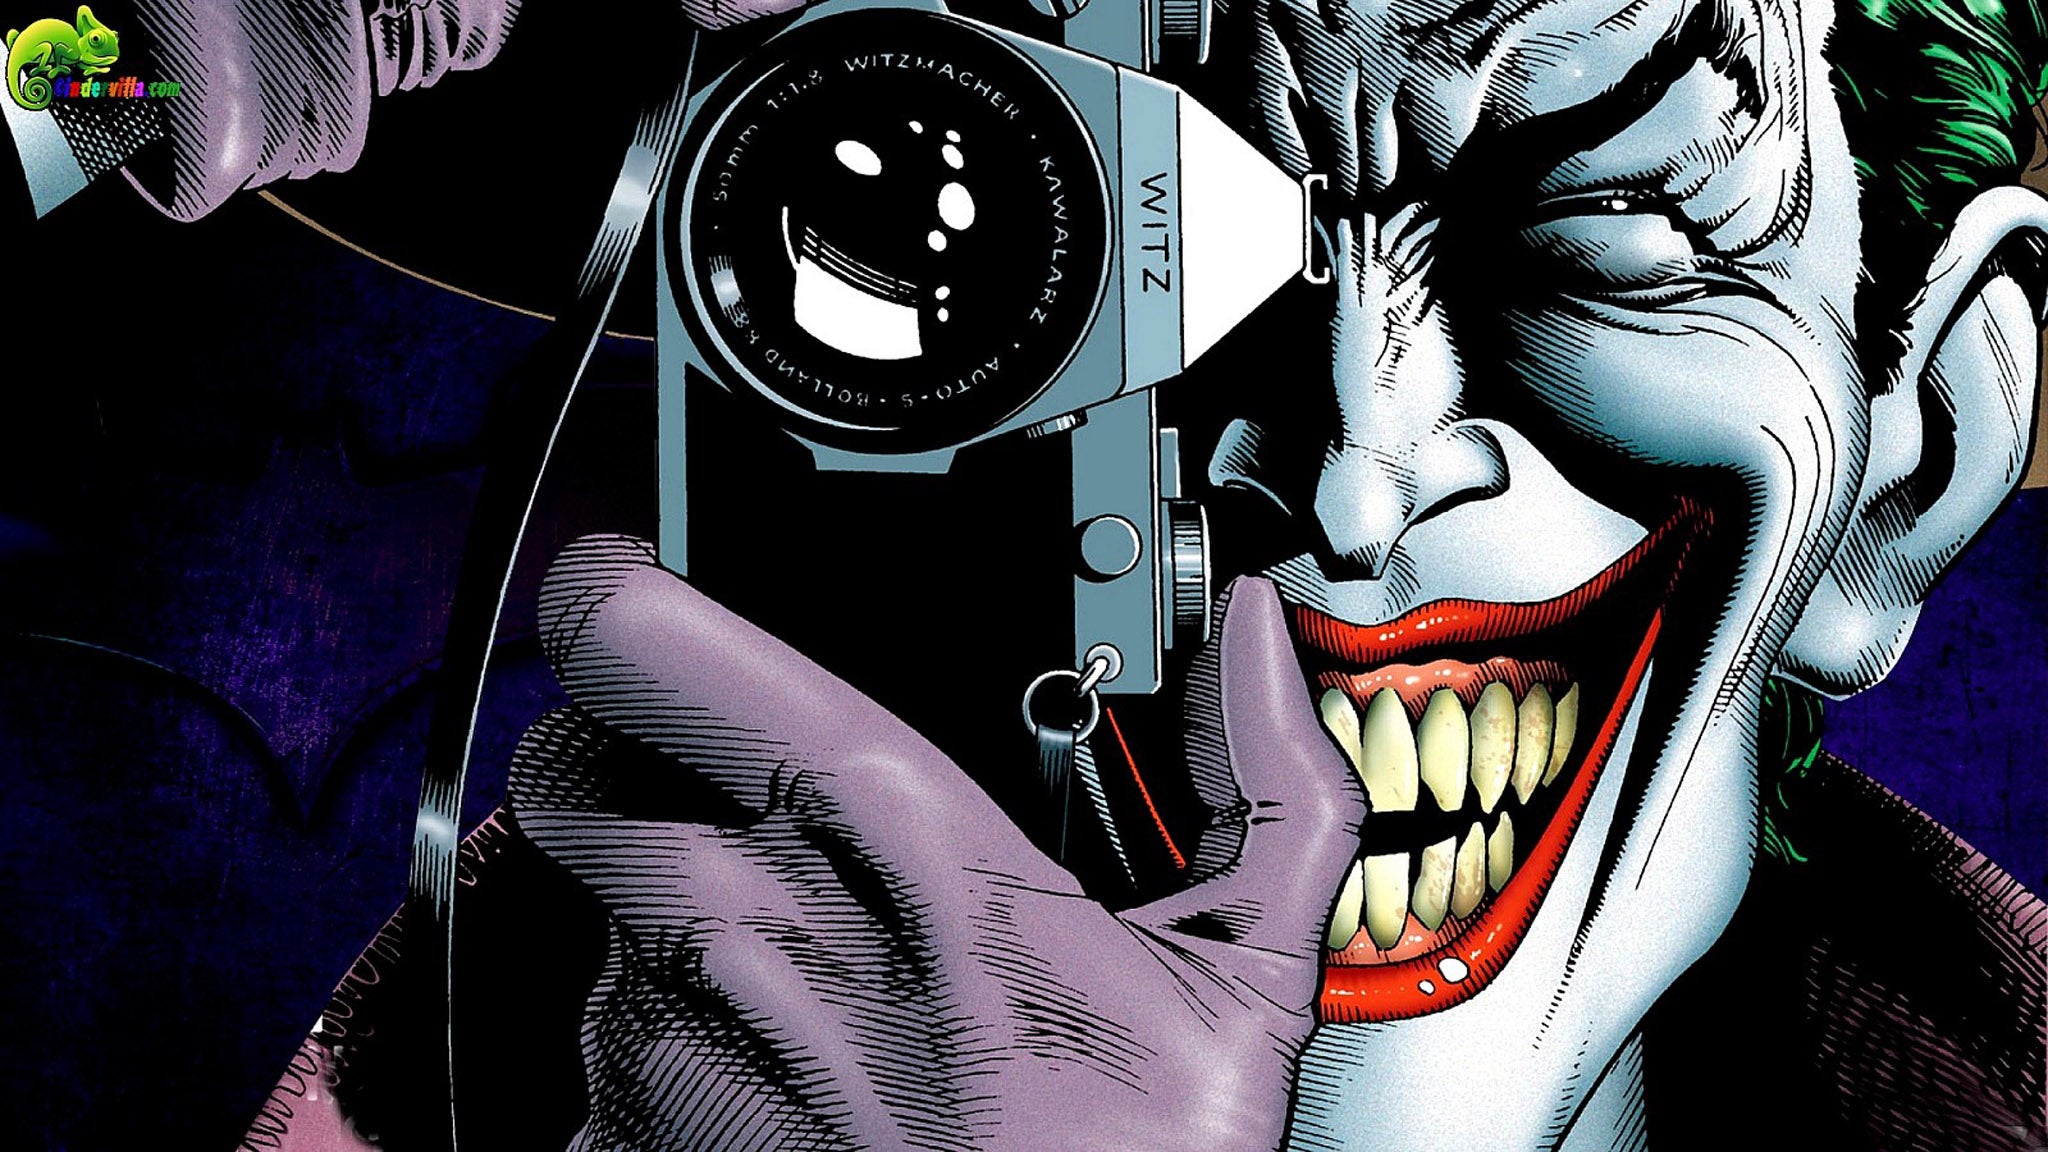 DC Comics' supervillain The Joker